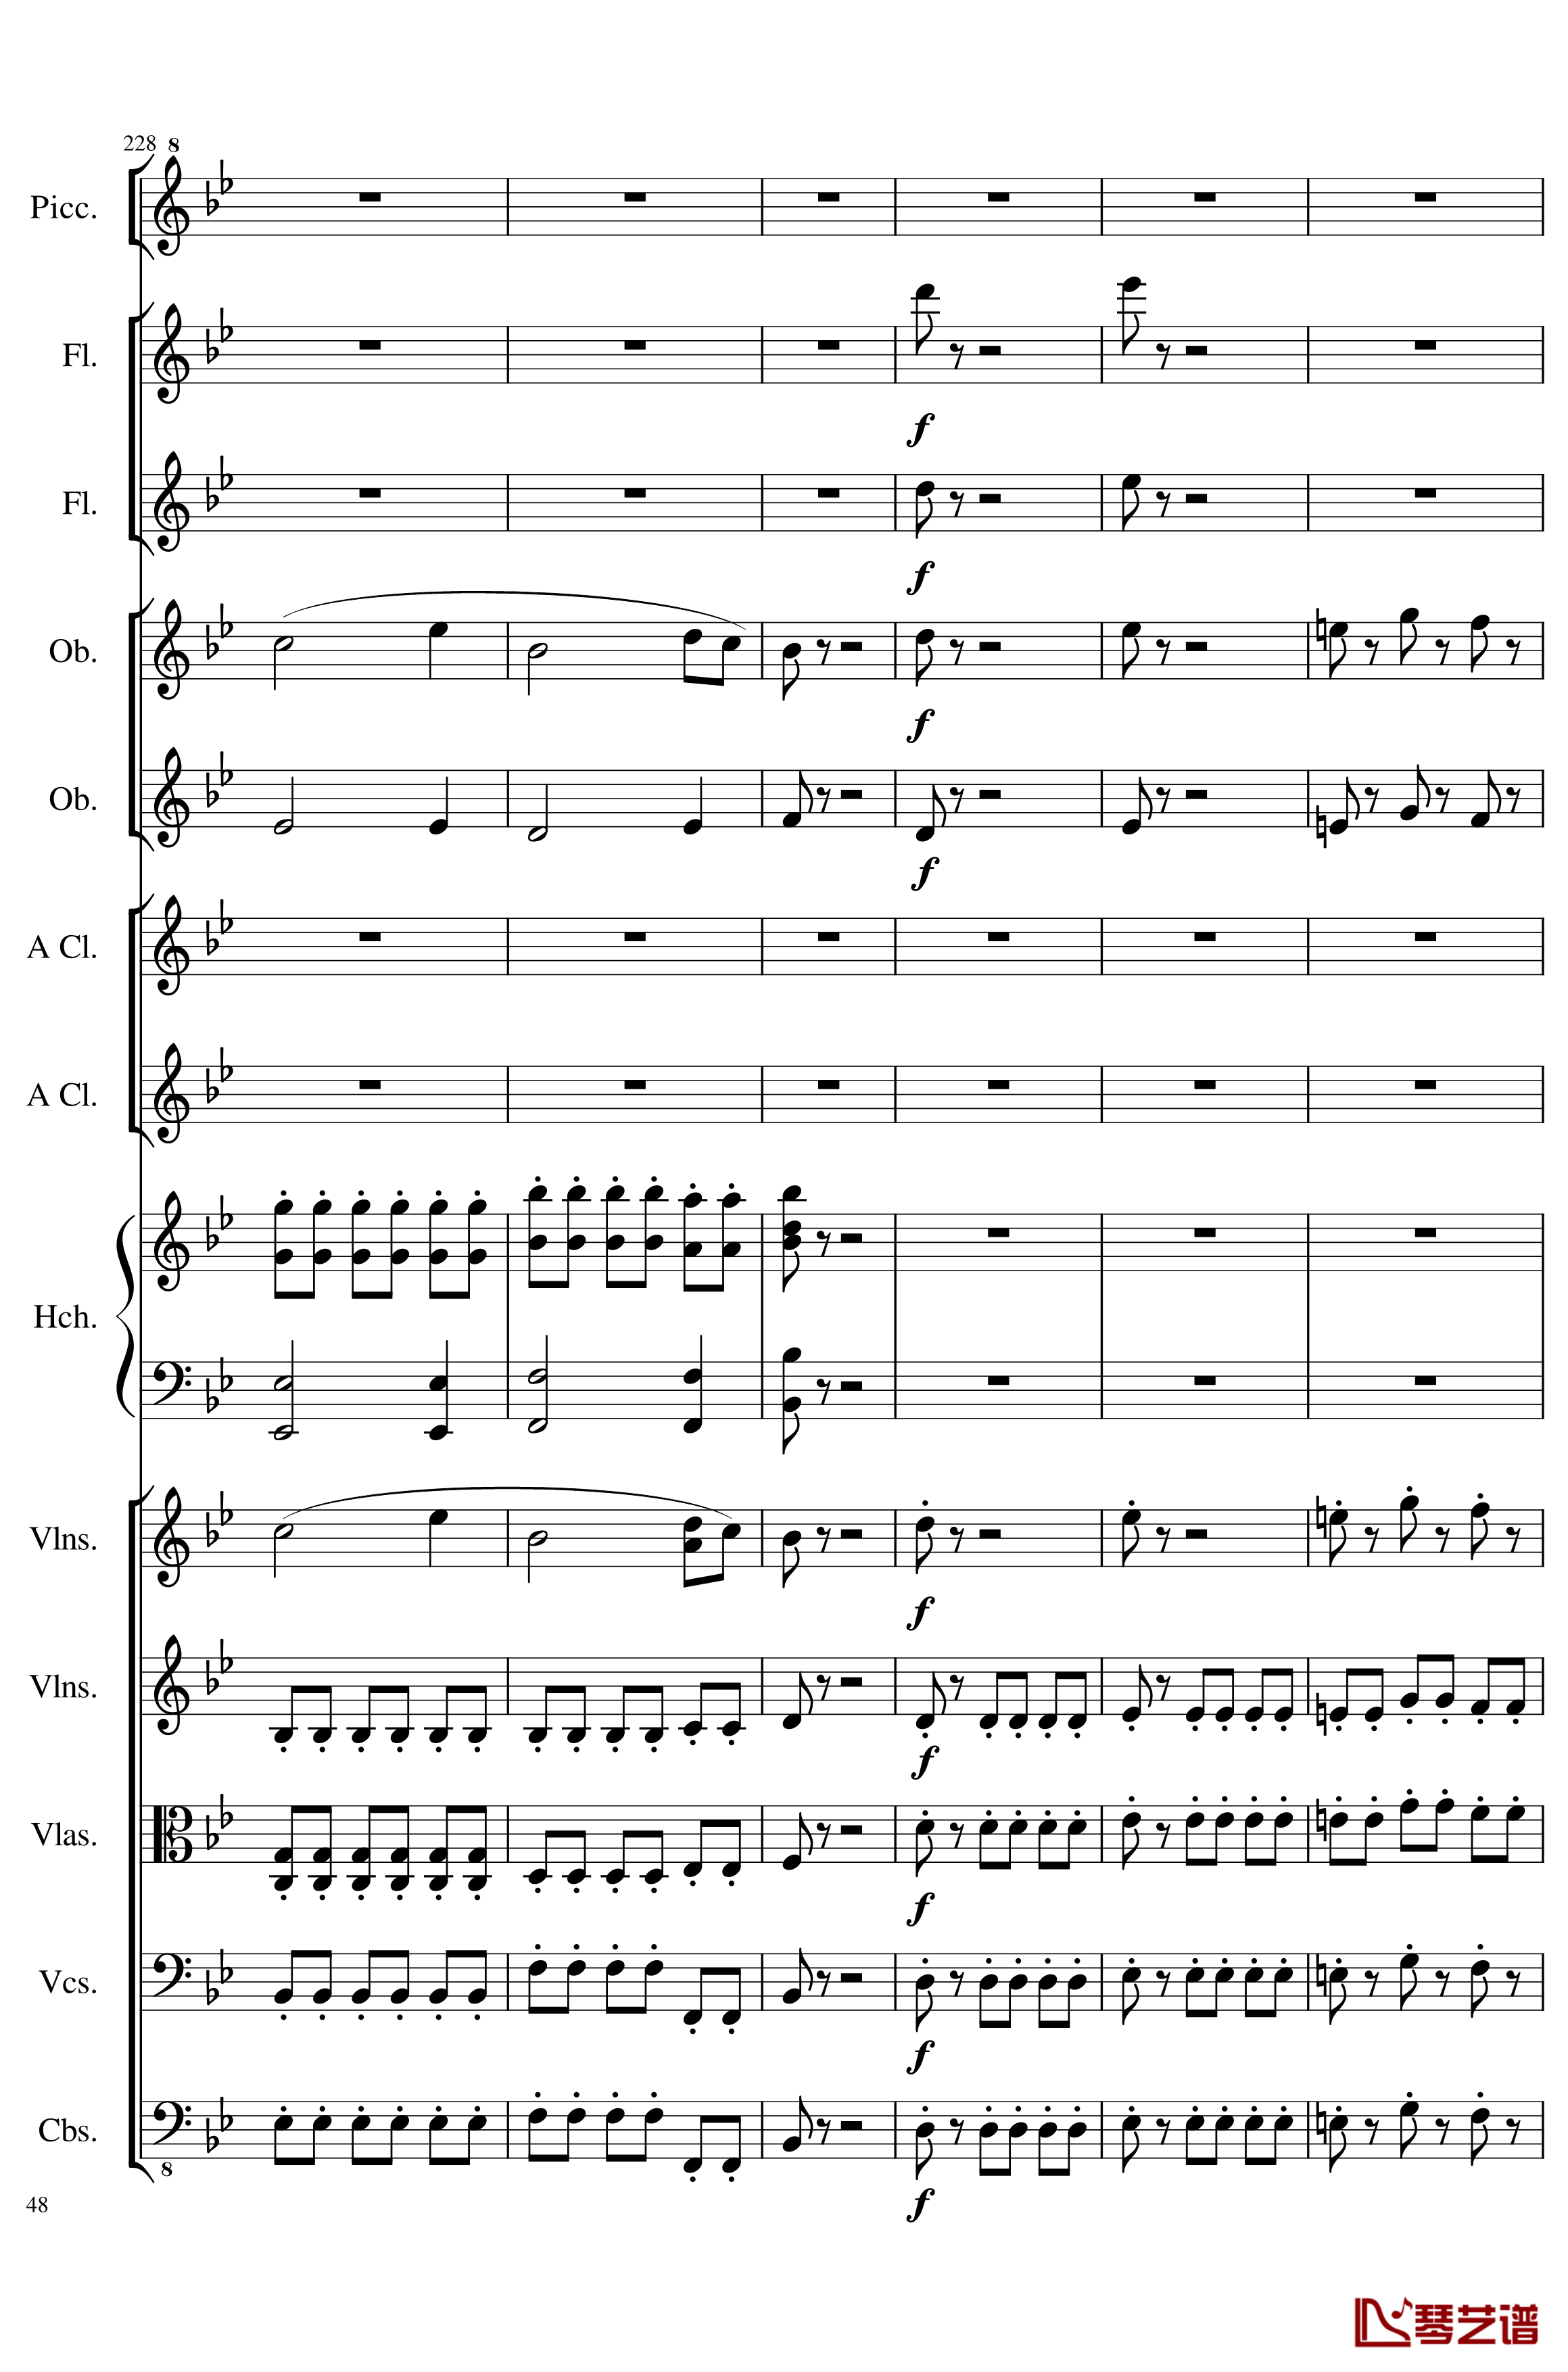 7 Contredanses No.1-7, Op.124钢琴谱-7首乡村舞曲，第一至第七，作品124-一个球48